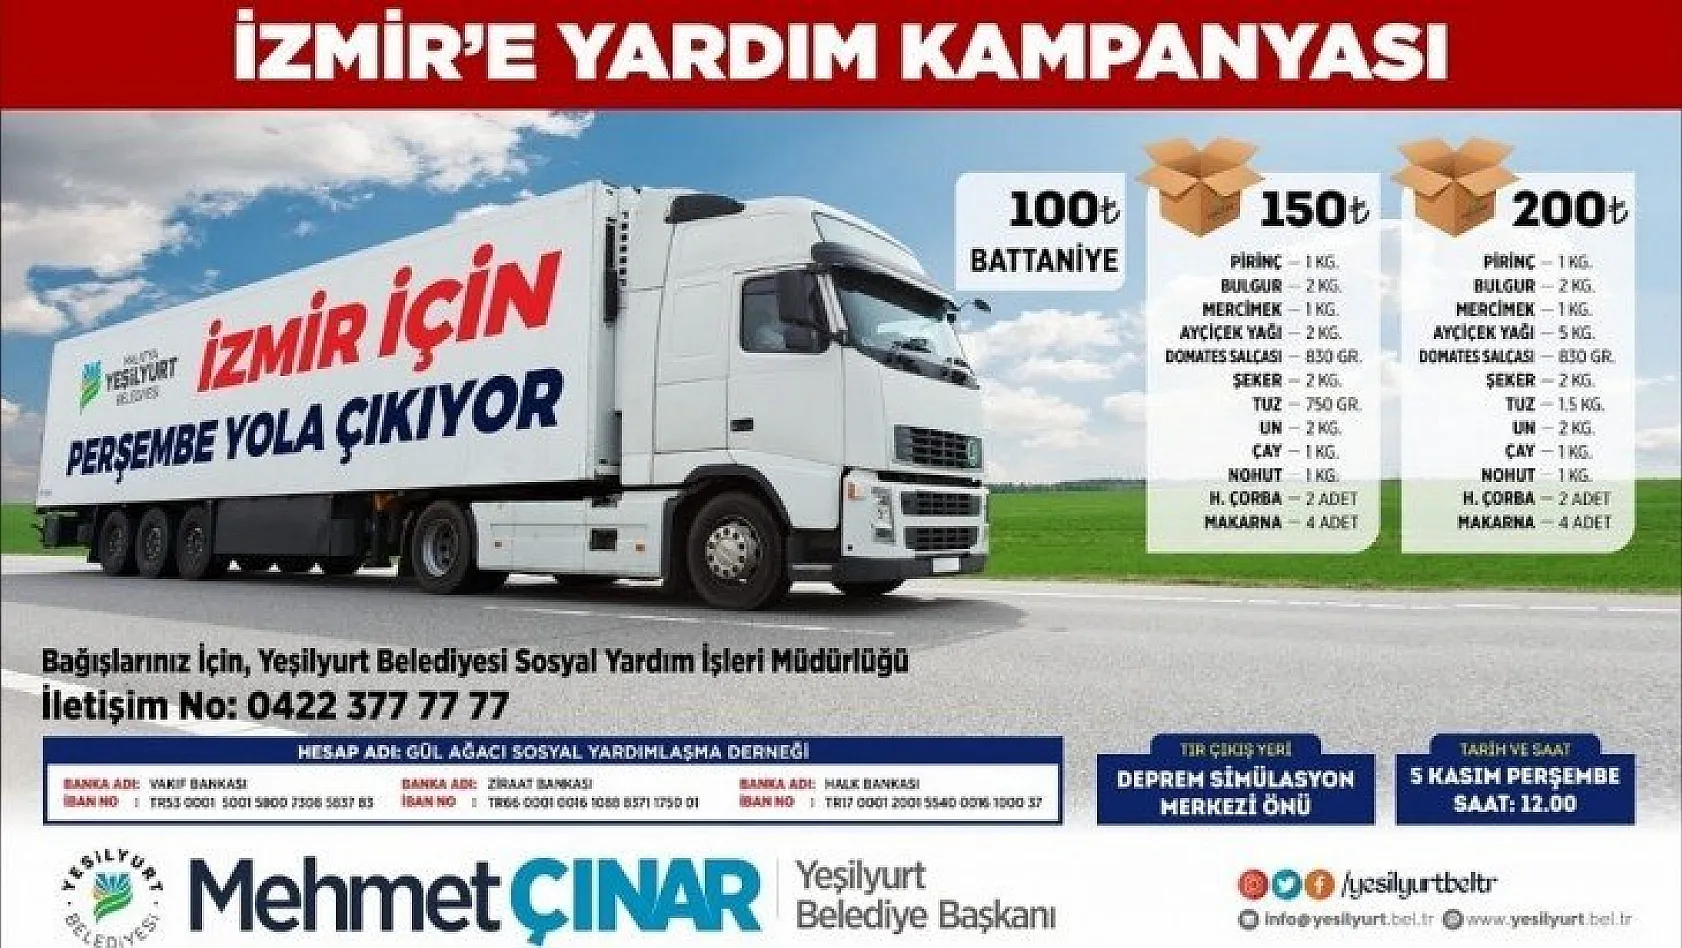 İzmir'e yardım kampanyası